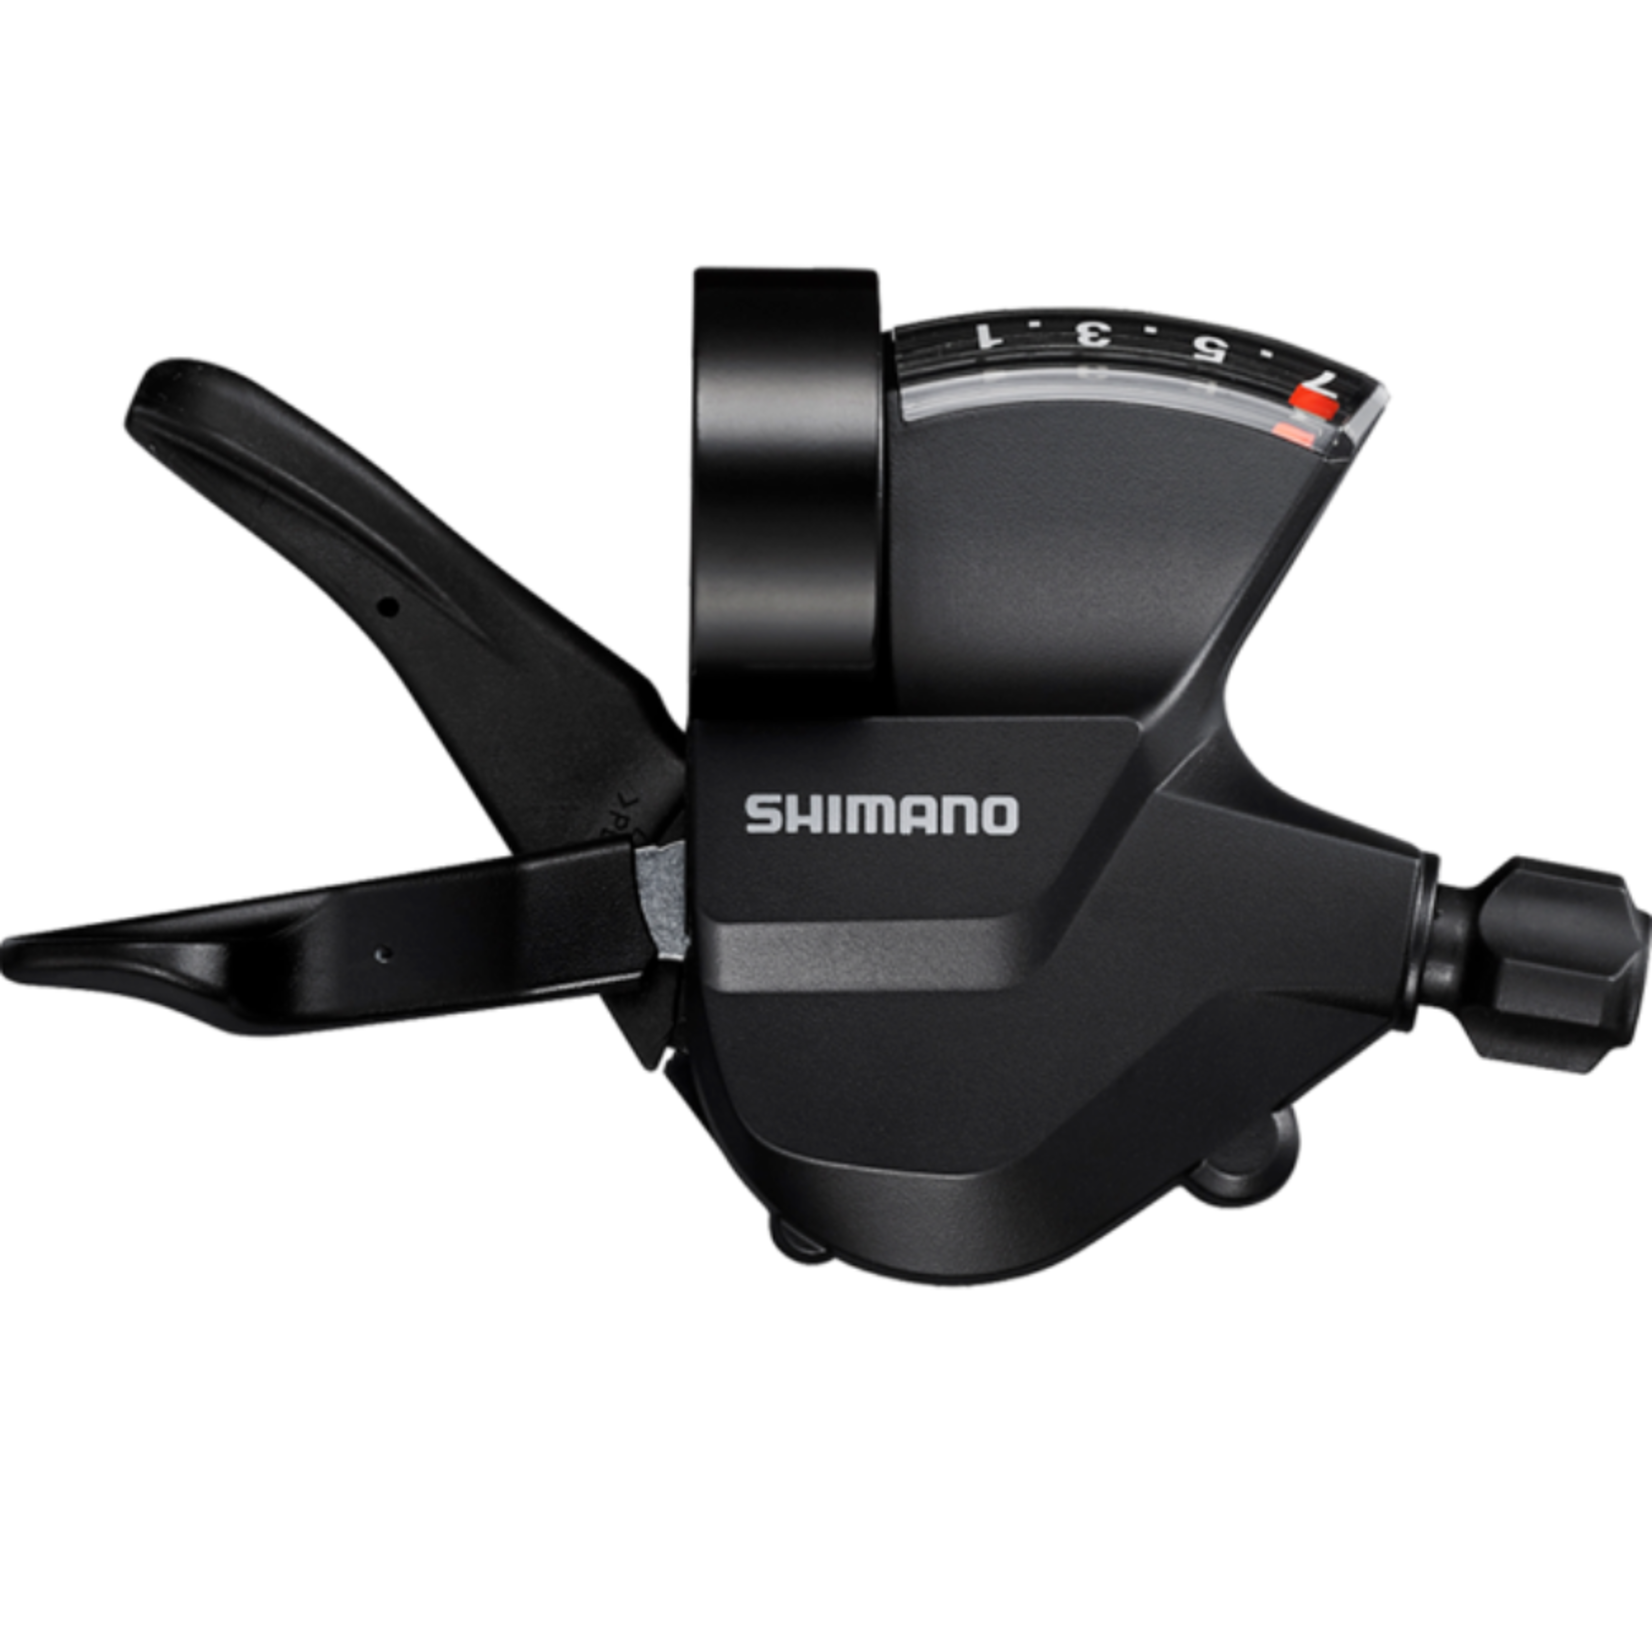 Shimano SHIFTER SHIMANO SL-M315 7R - 7 SPEED